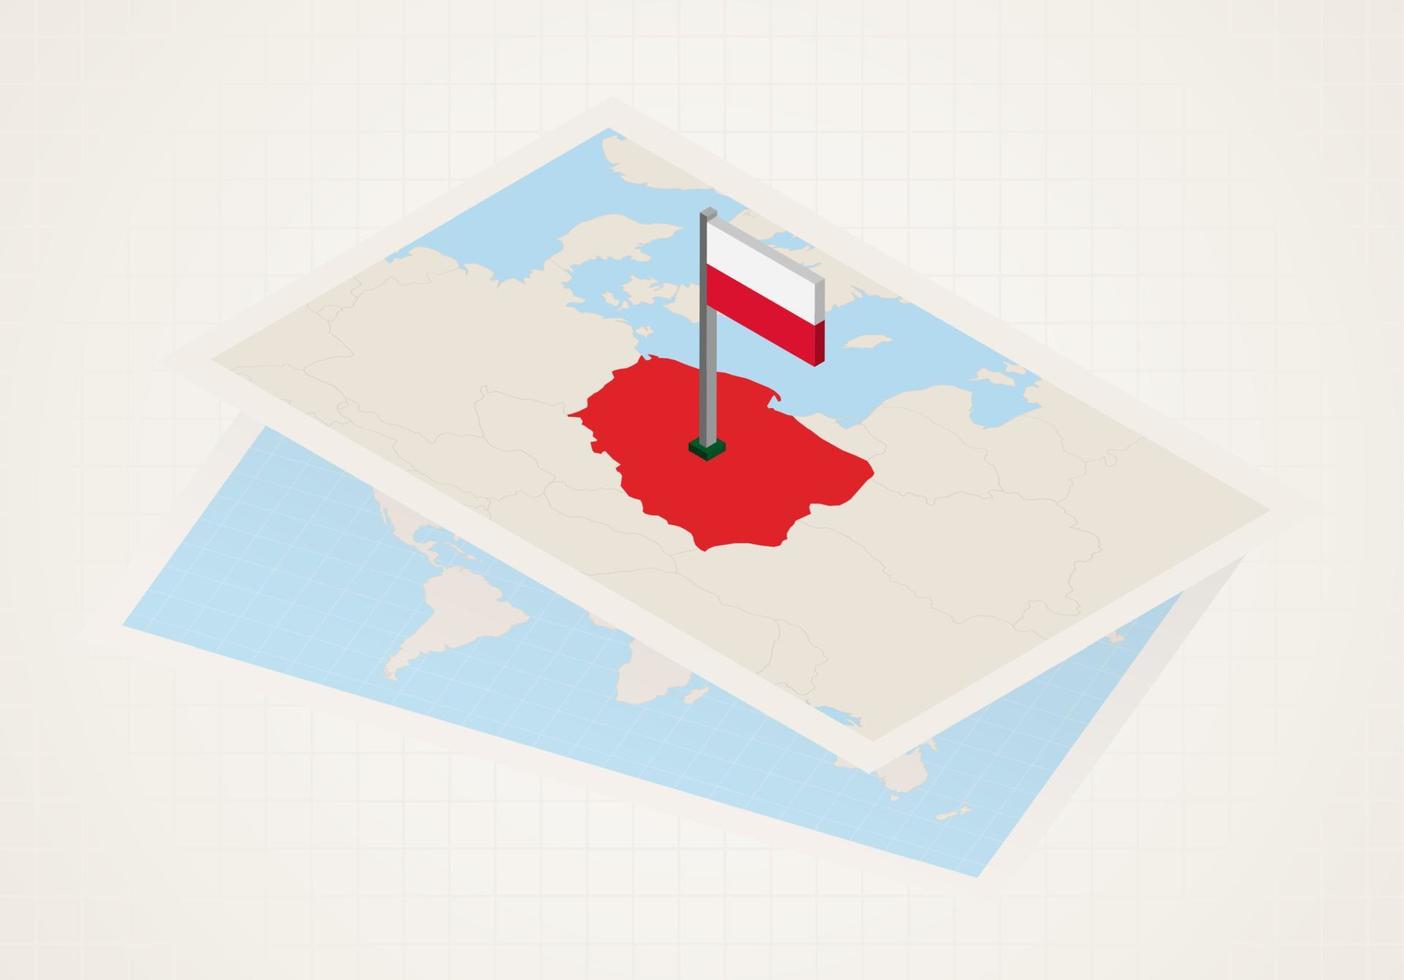 polonia seleccionada en el mapa con bandera isométrica de polonia. vector